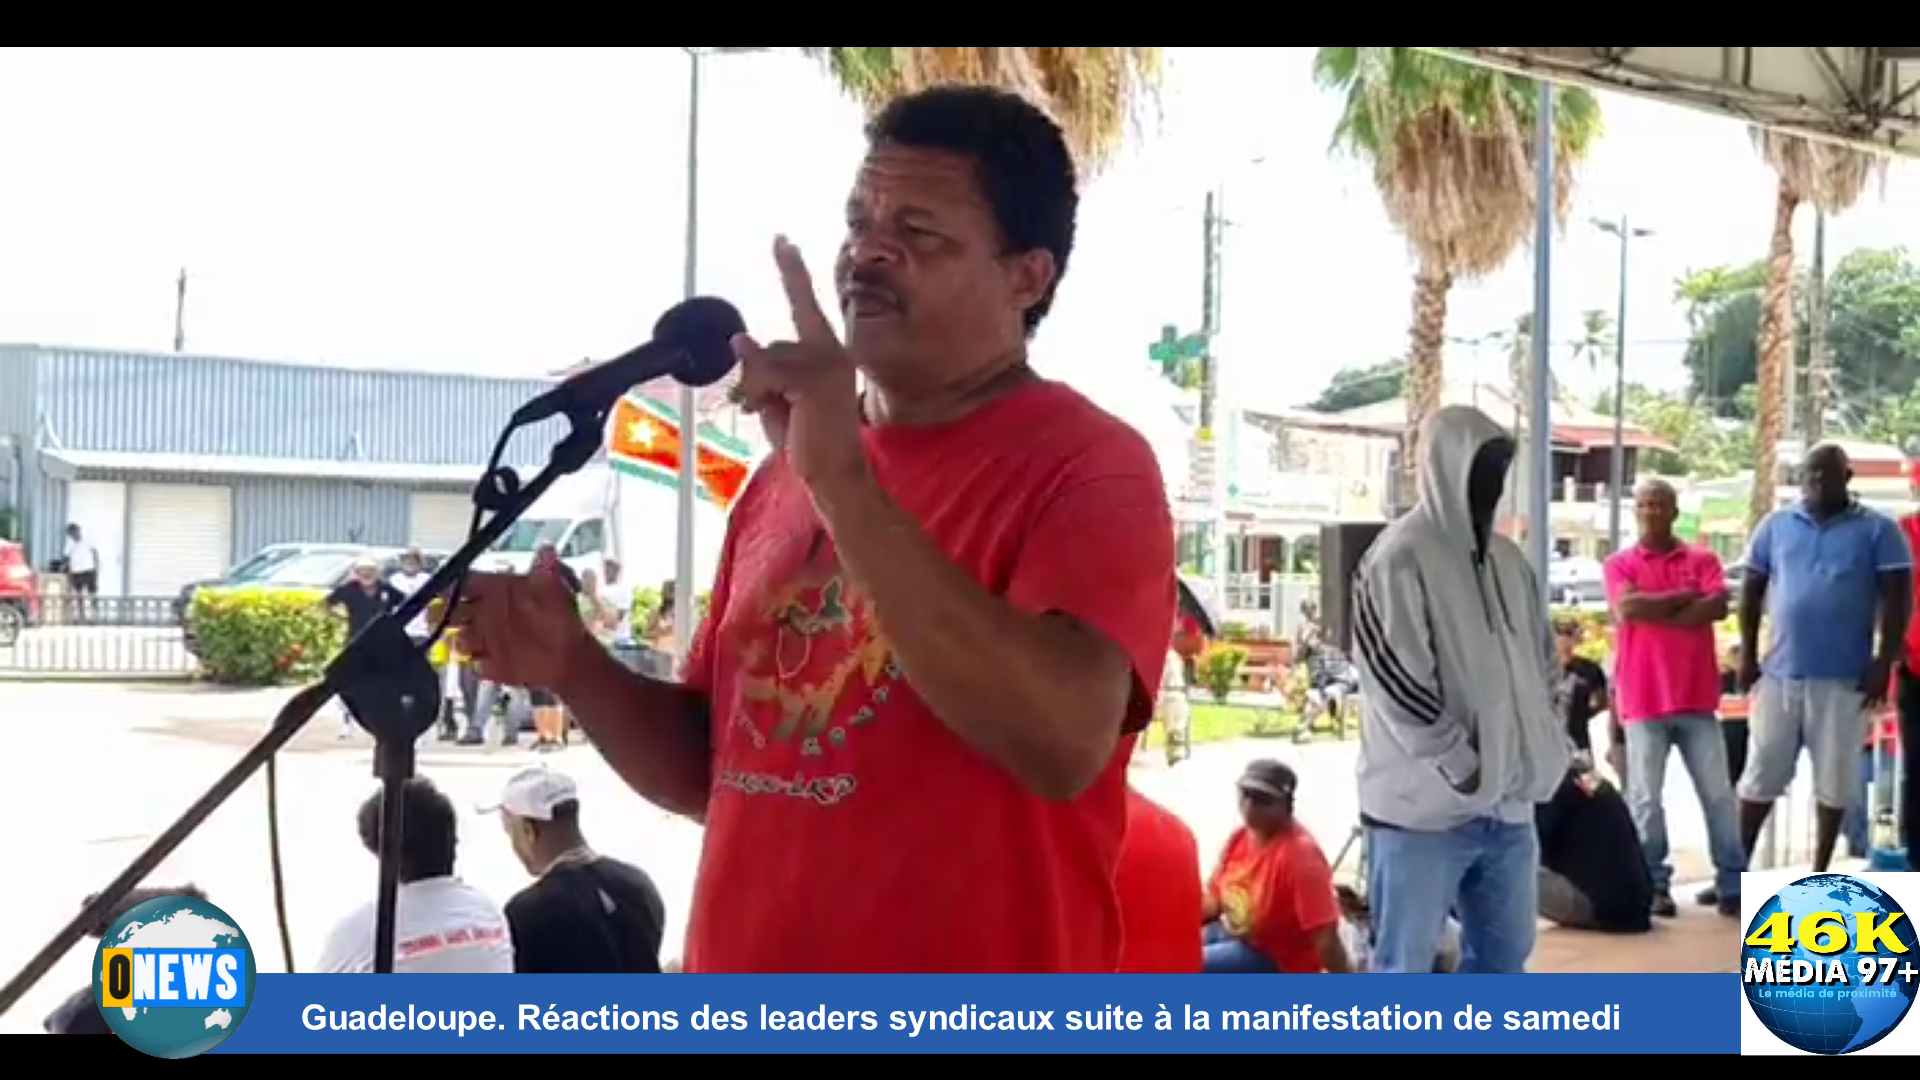 [Vidéo] Guadeloupe. Réactions des leaders syndicaux suite à la manifestation de samedi (Média 97+)